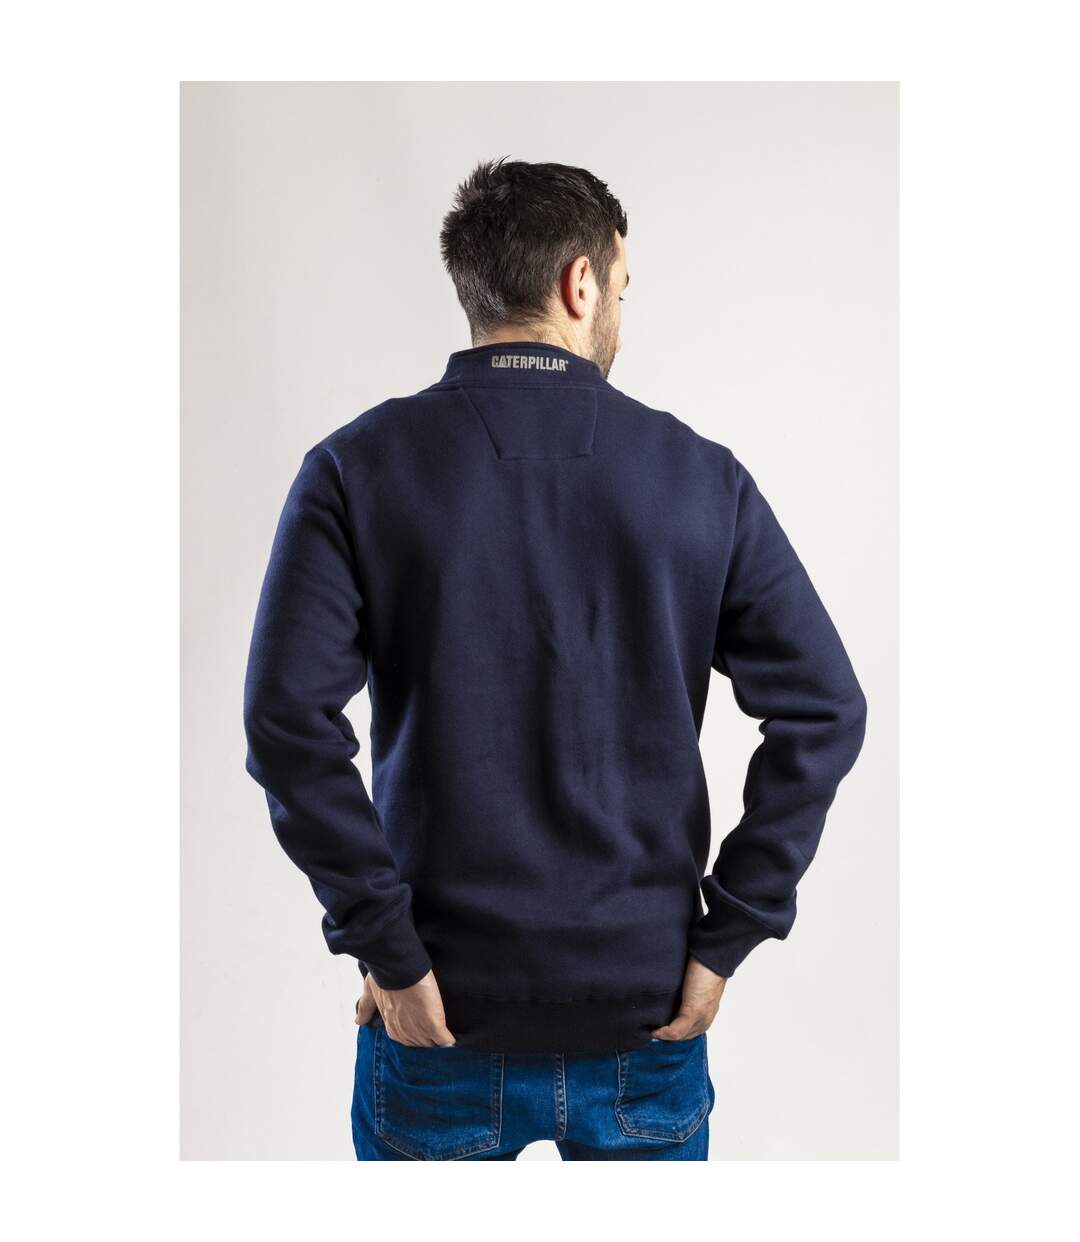 Caterpillar Canyon - Sweatshirt à col zippé - Homme (Bleu marine) - UTFS3424